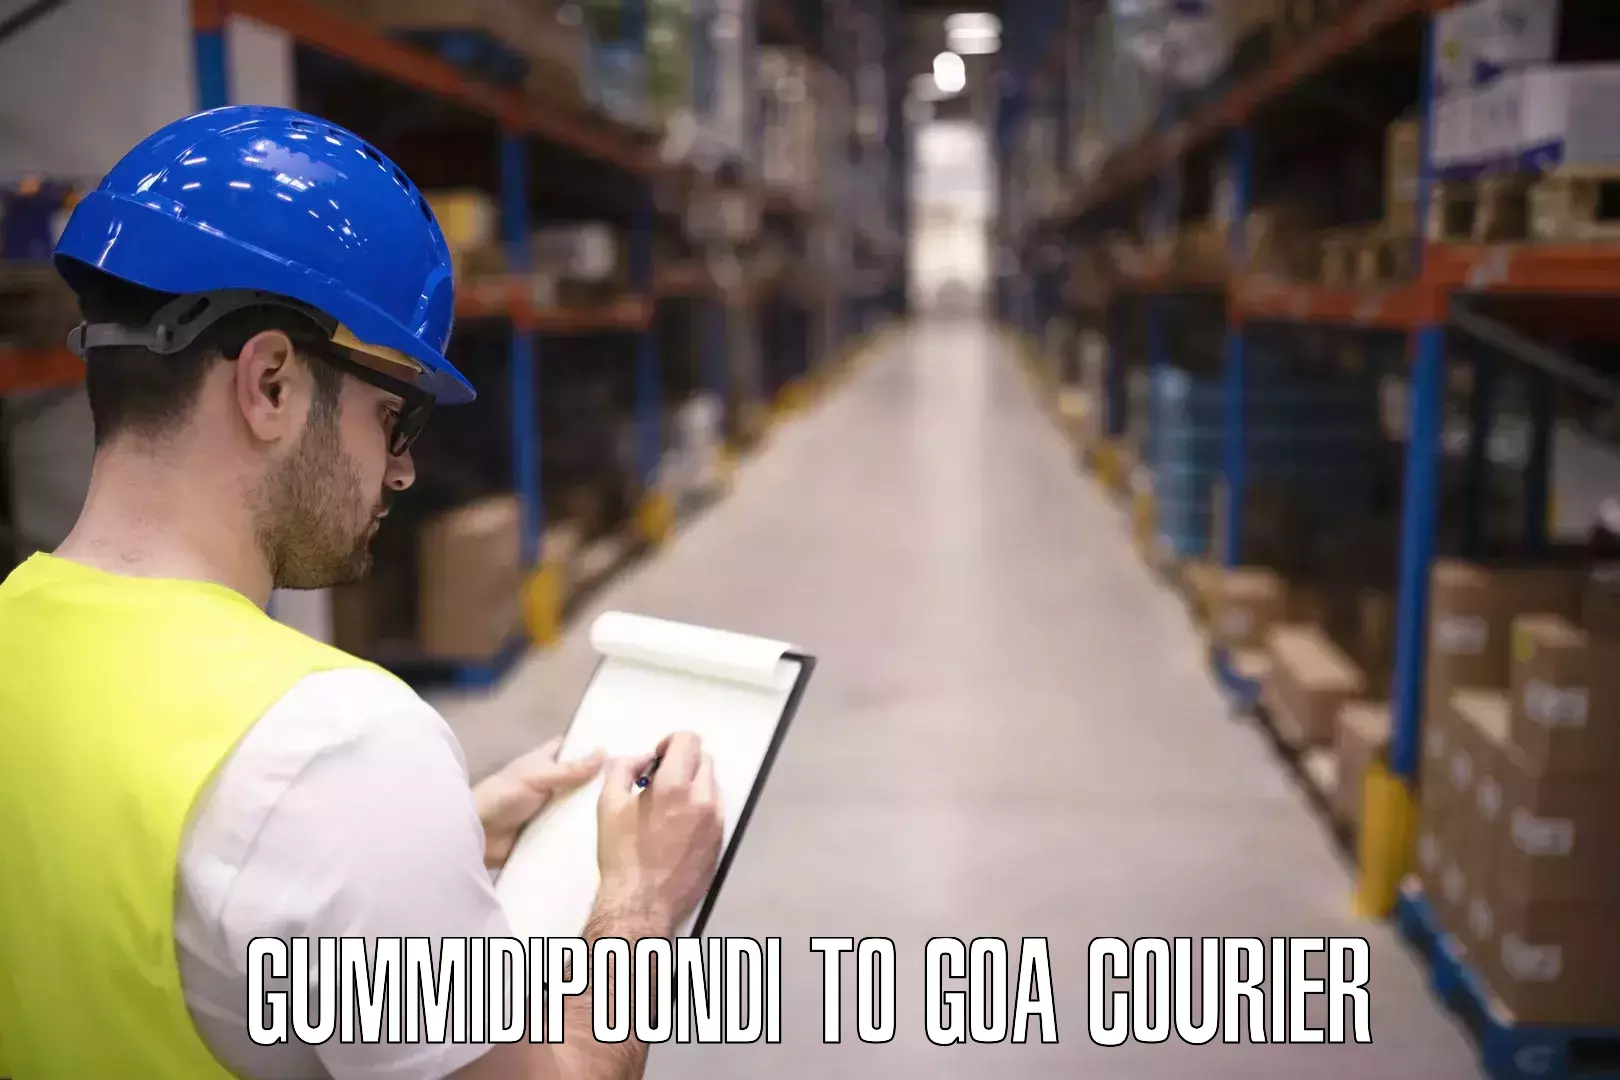 Luggage transfer service Gummidipoondi to South Goa